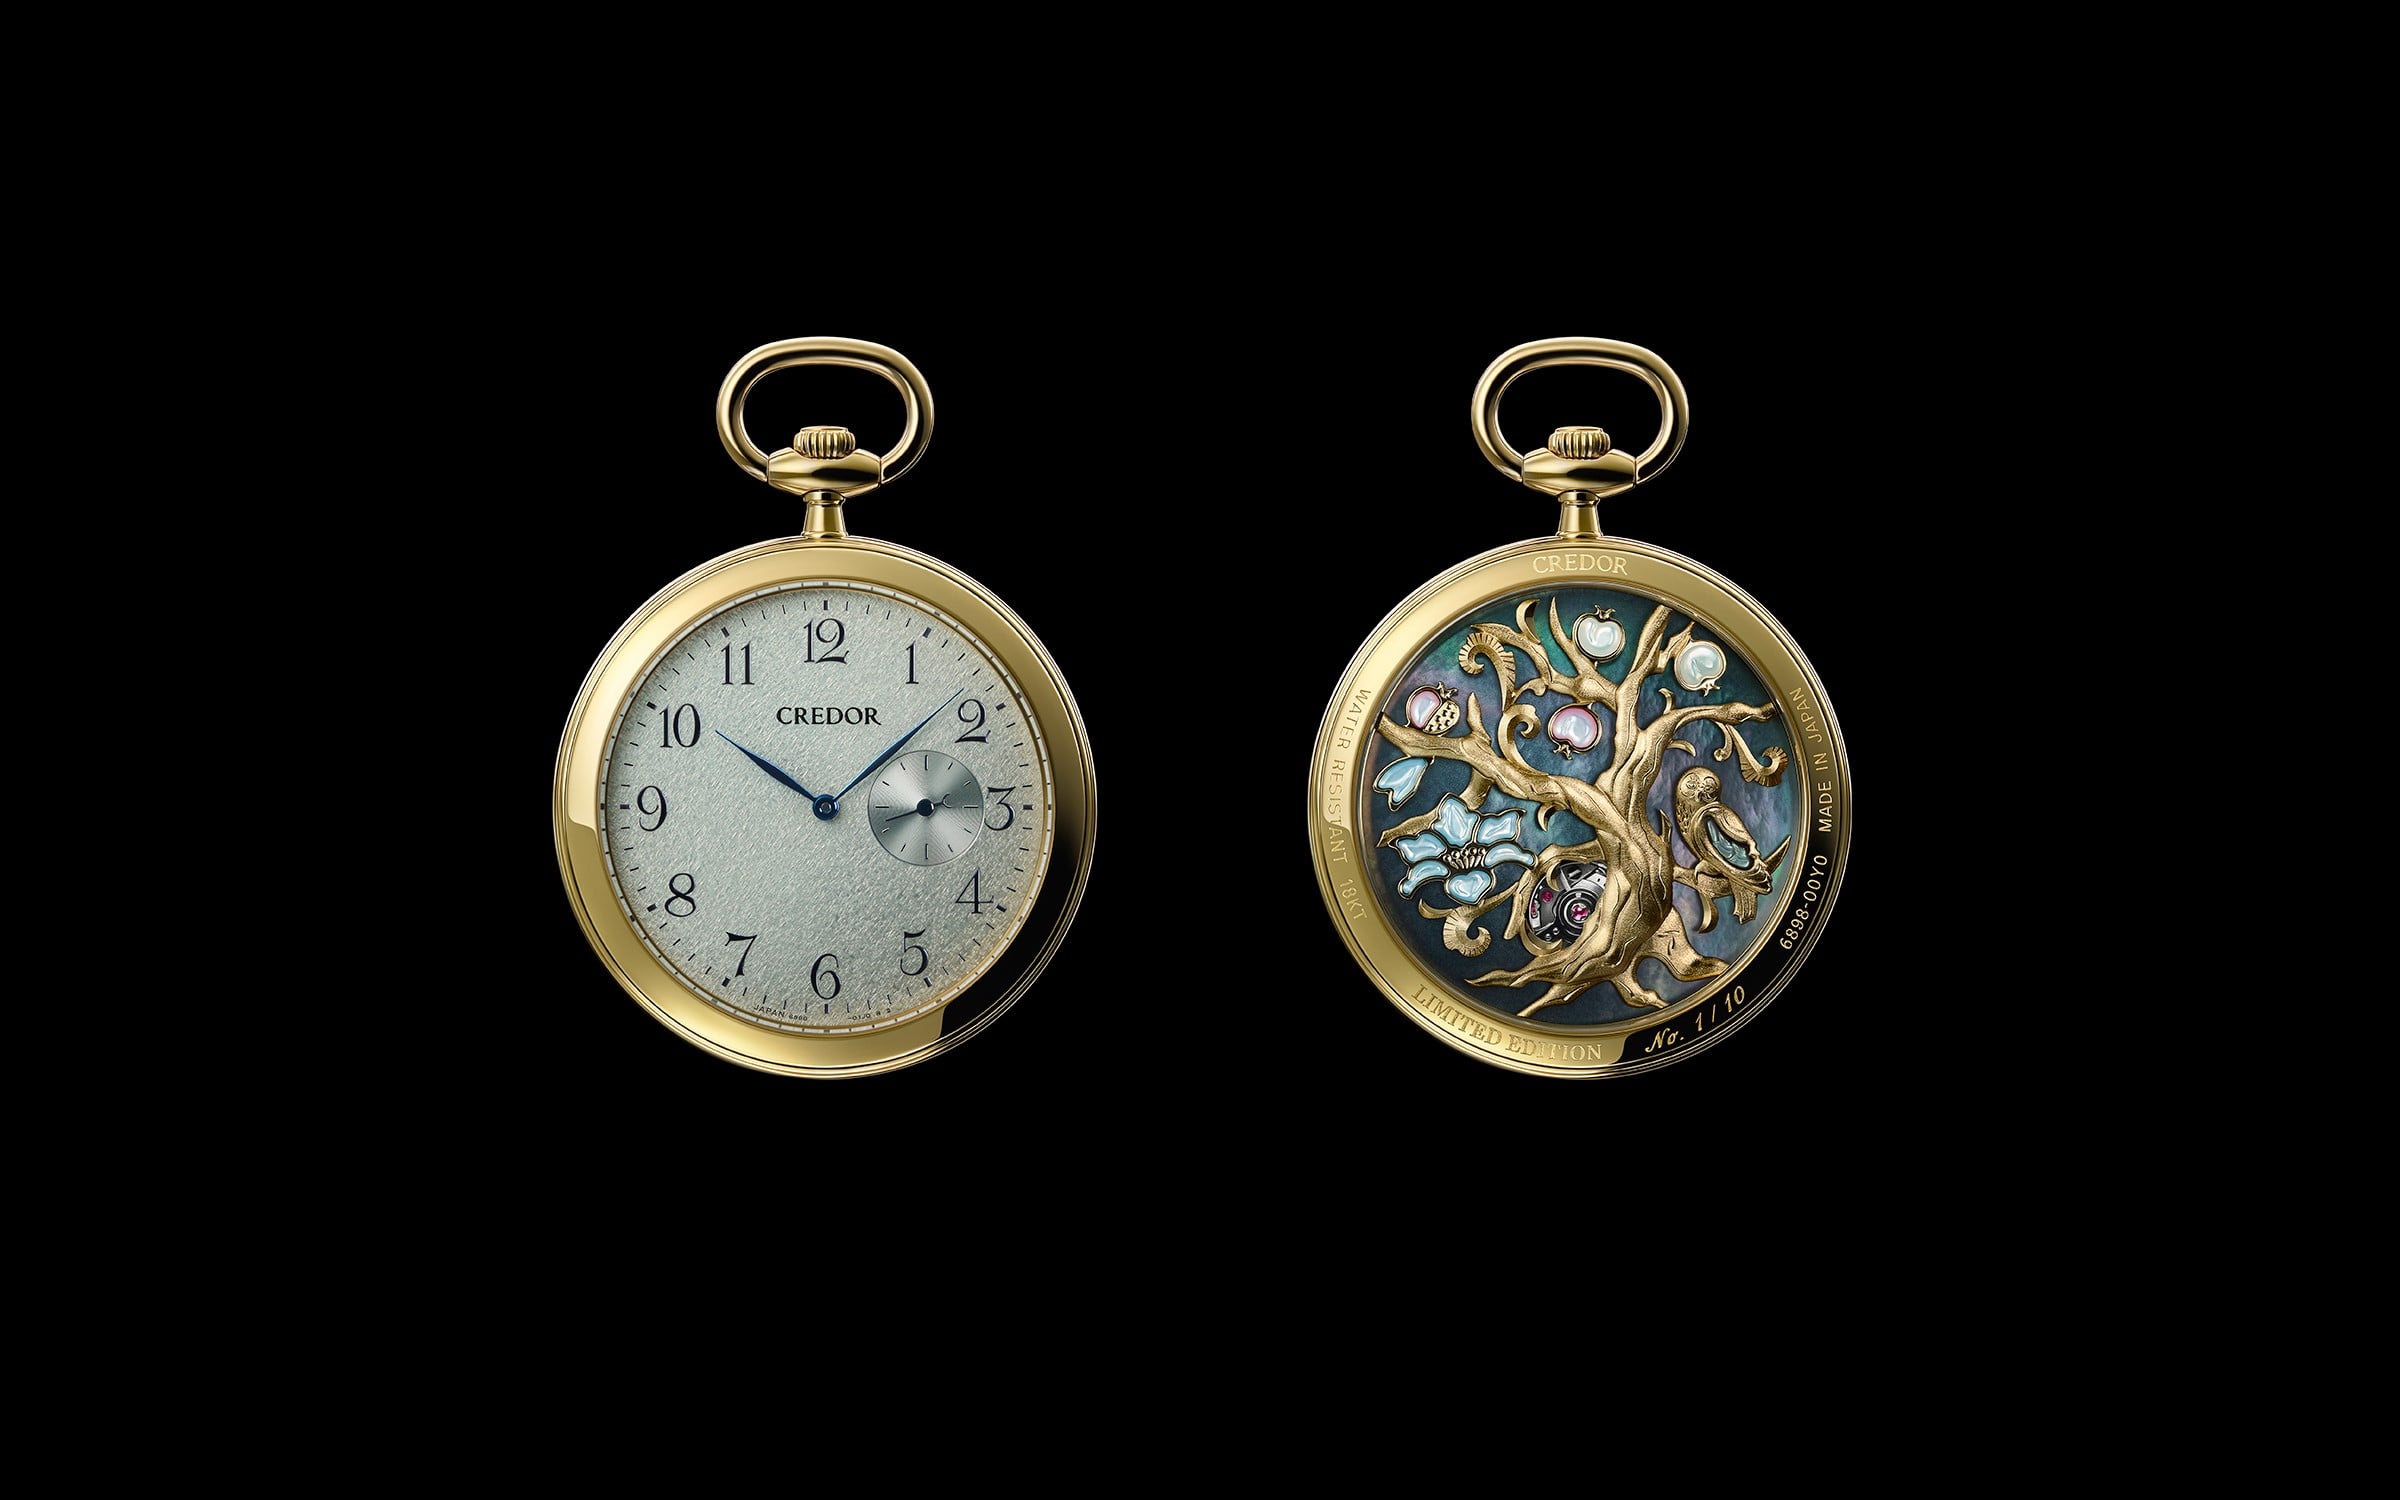 45週年紀念款「立體雕金懷錶」 GXBE998
搭載CREDOR引以為傲的超薄機械機芯，錶殼背面精美絕倫的立體雕金工藝更是當代鐘錶名匠照井清的傾力之作。全球限量10隻。手動上弦 機芯編號6898 錶殼：18K黃金、藍寶石 錶鍊：18K黃金 直徑39.0 mm 10,000,000日圓（不含稅）
